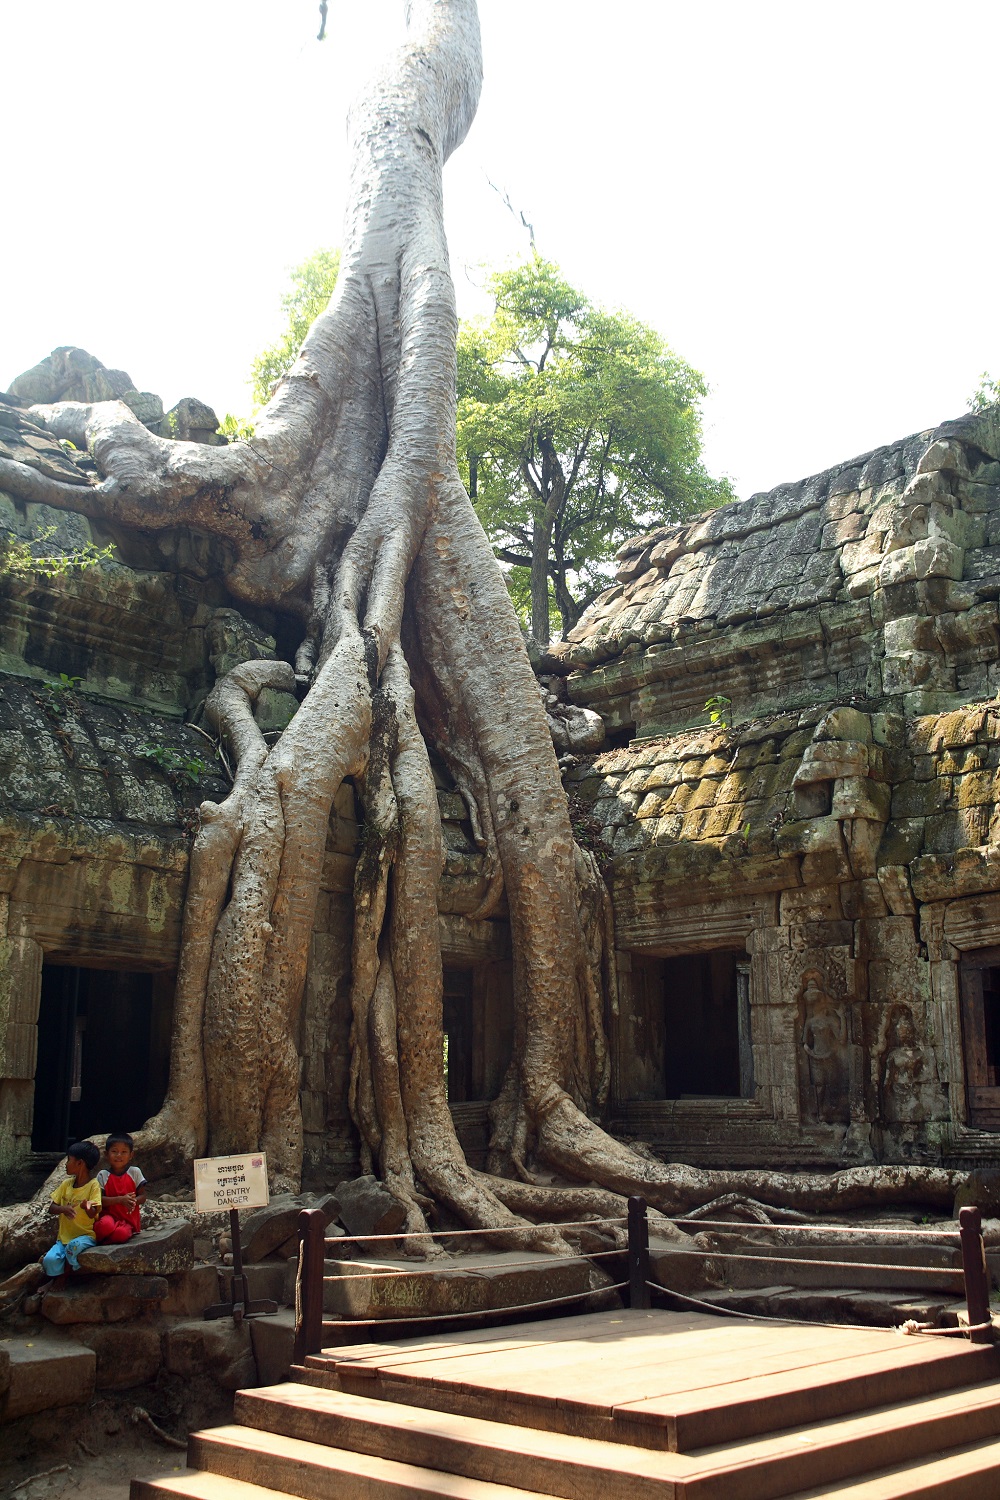   Приключения: Ангкор Ват — ужас и мистика древних. Храм древних богов кхмеров - фото 6